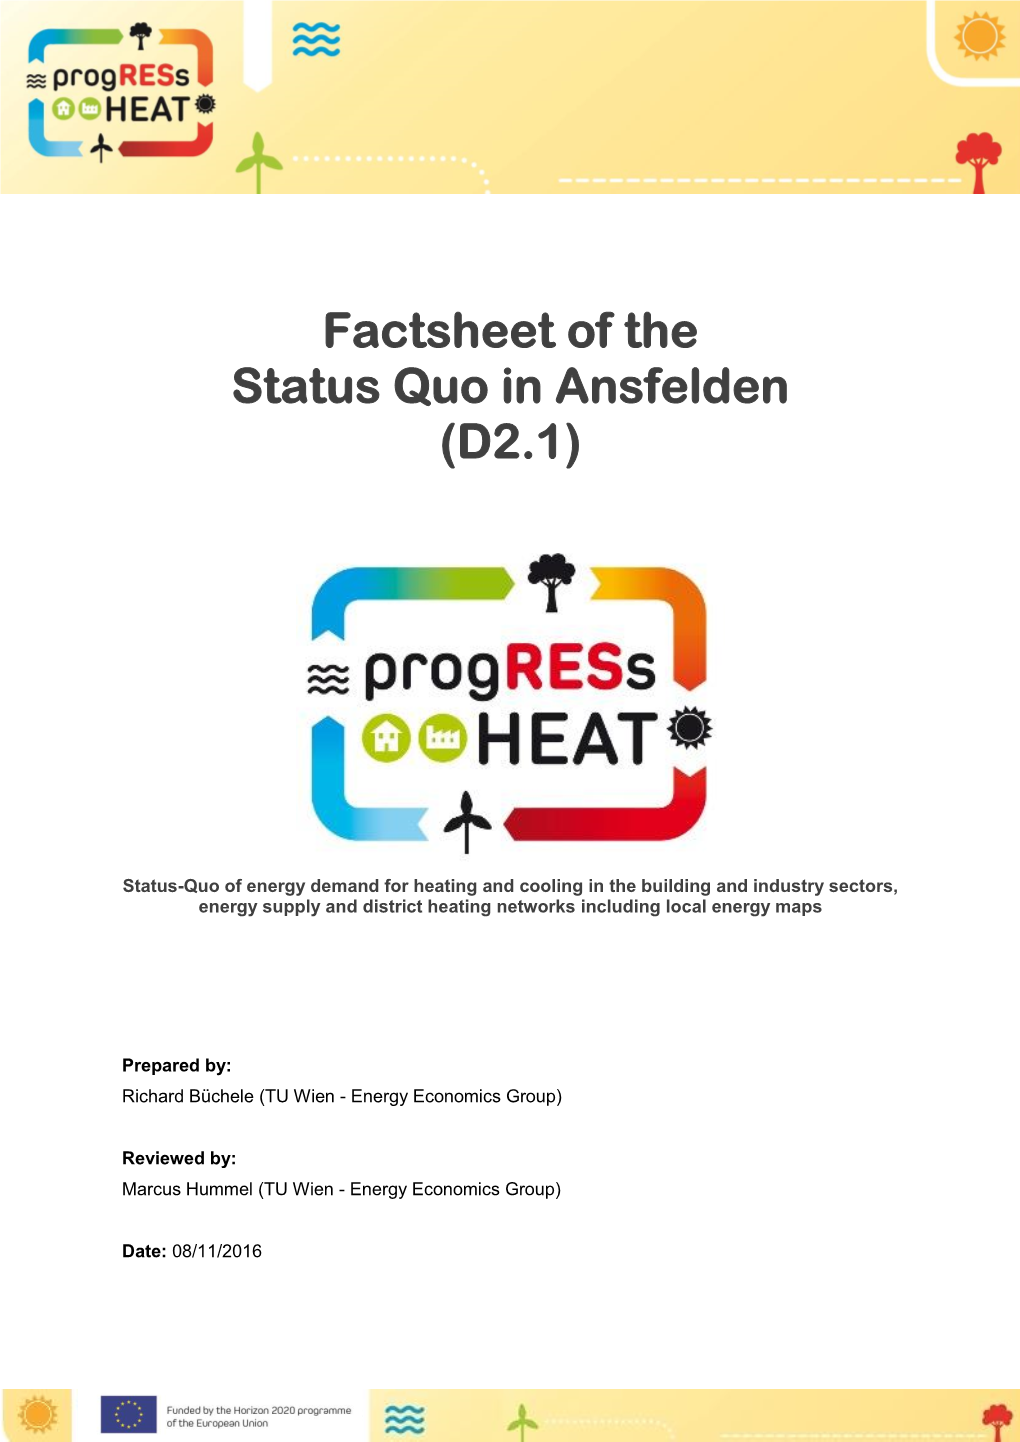 Factsheet of the Status Quo in Ansfelden (D2.1)